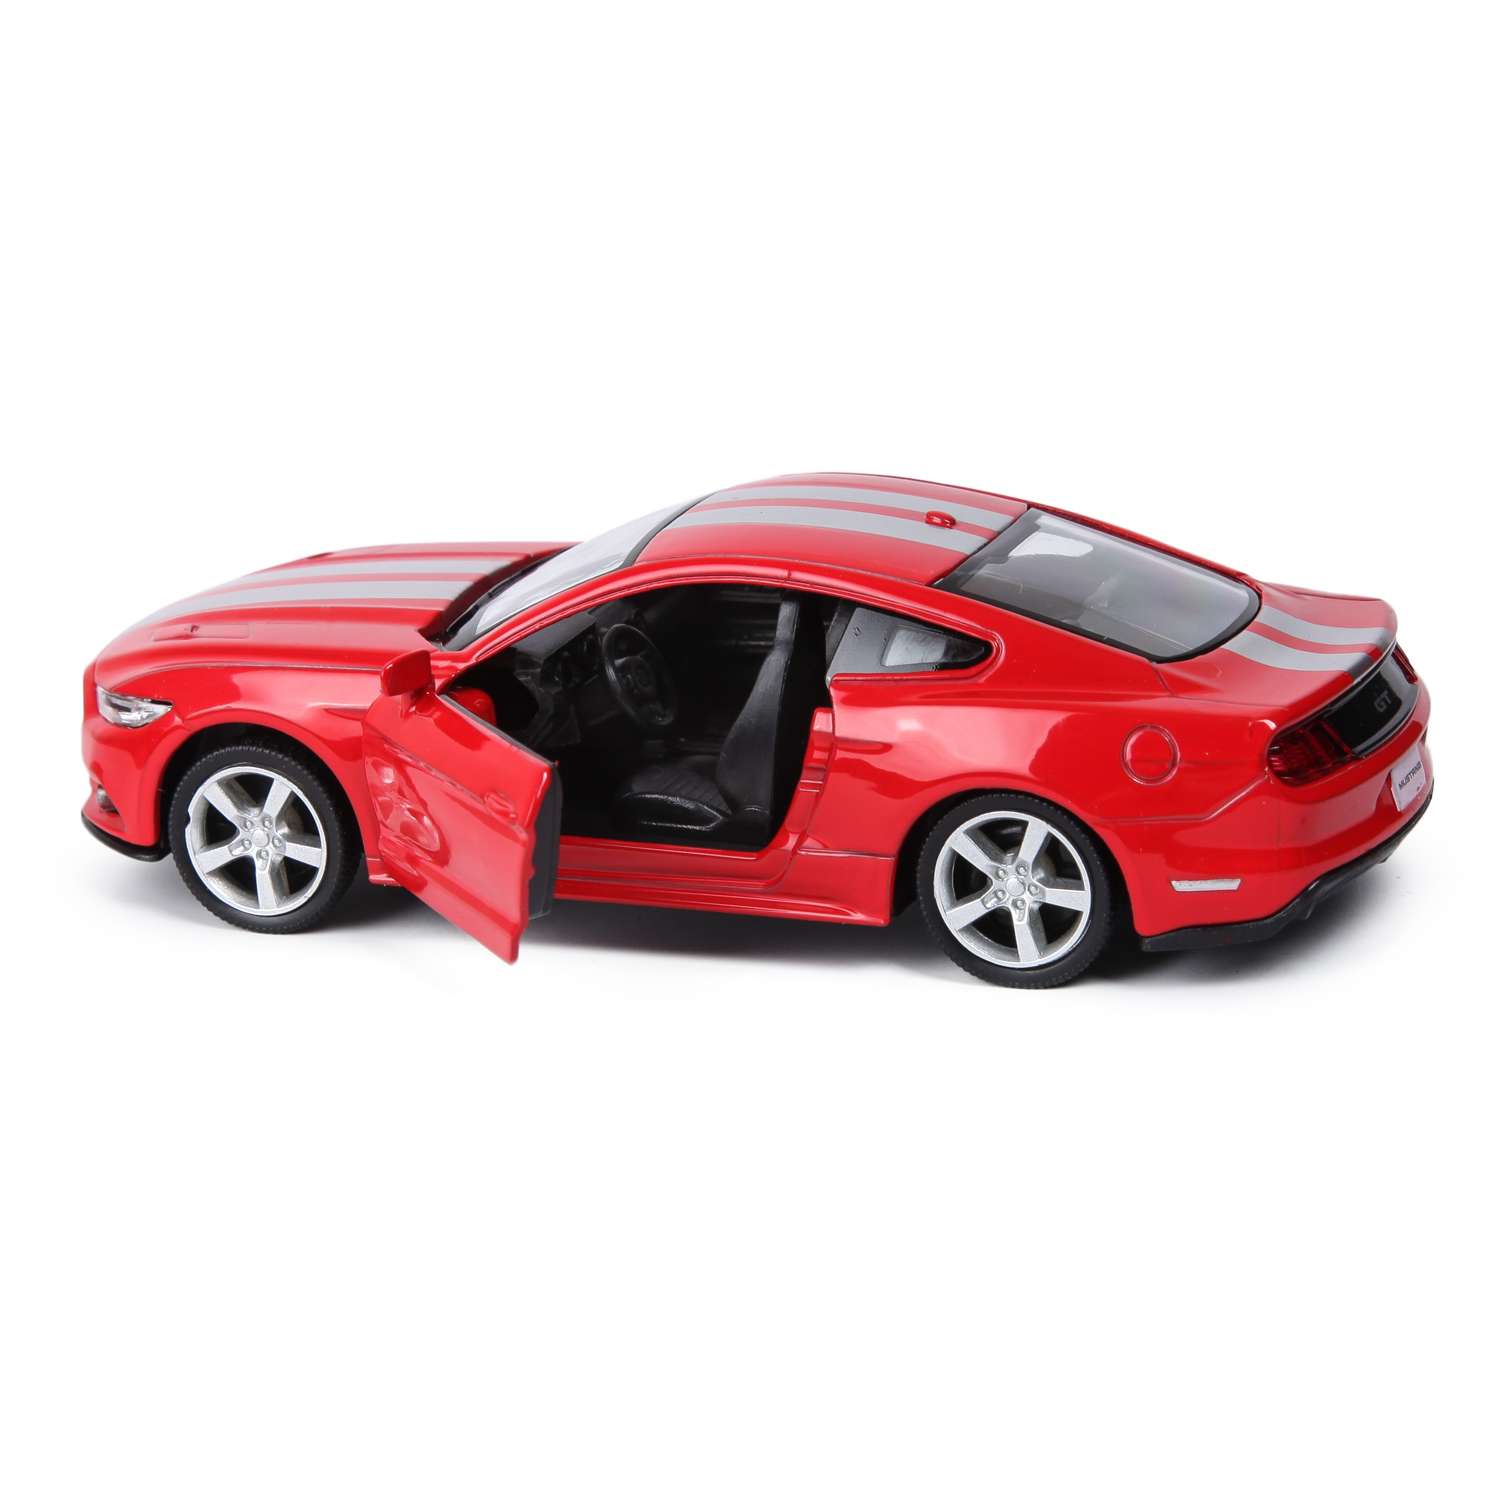 Машинка Mobicaro 1:32 Ford Mustang 2015 в ассортименте 544029C 544029C - фото 4